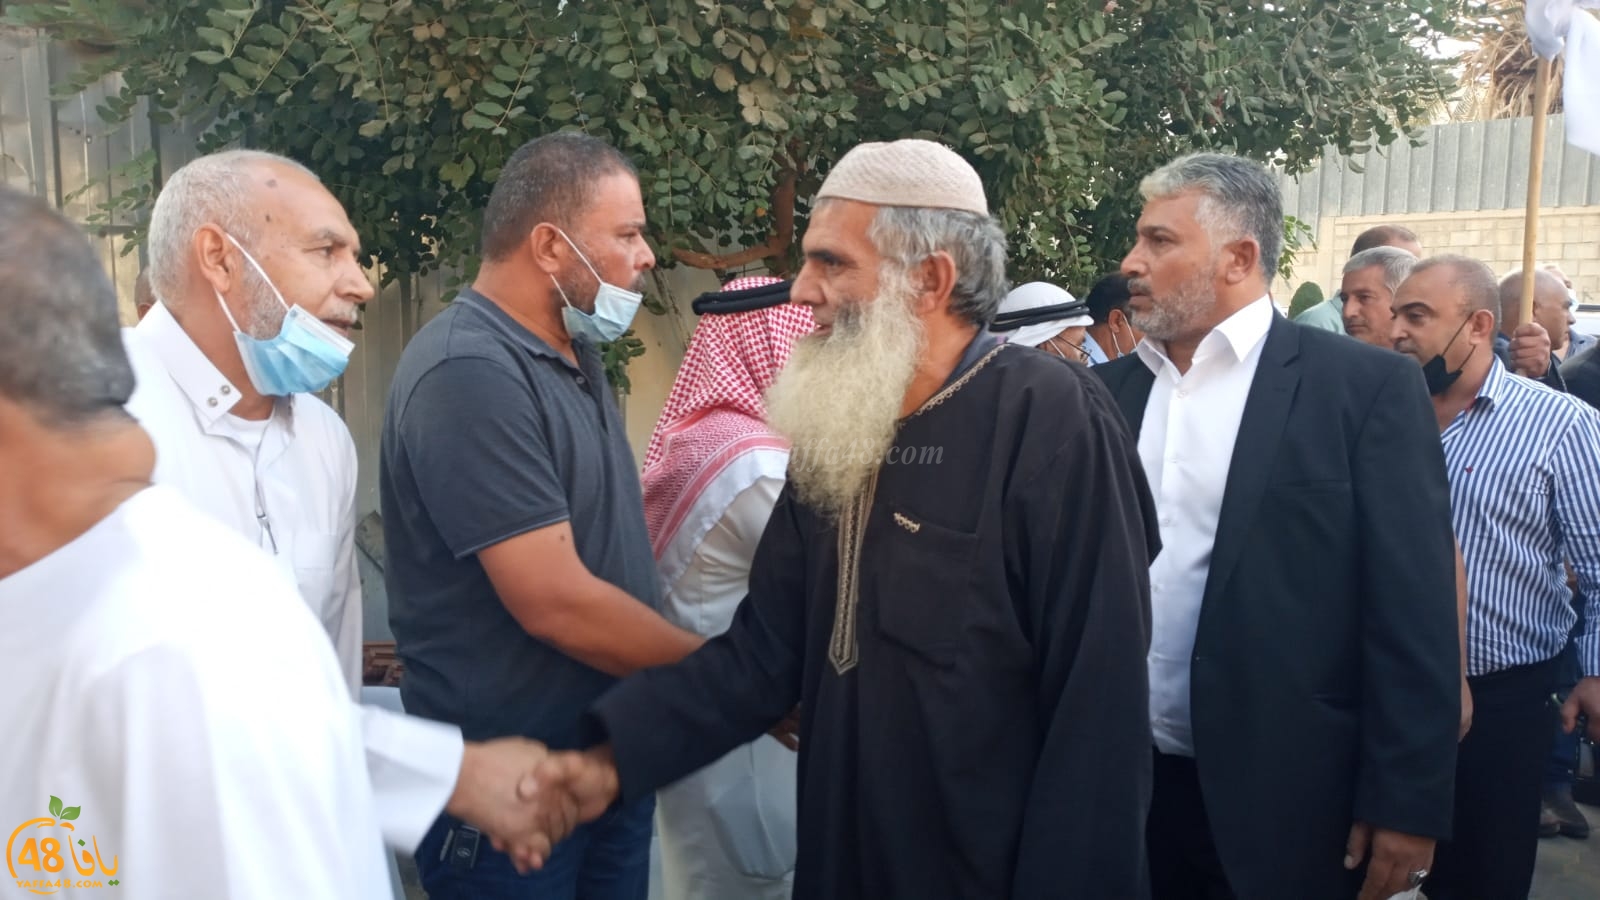 فيديو: عقد راية الصلح بين عائلتي أبو رياش من اللد وأبو قديري من رهط